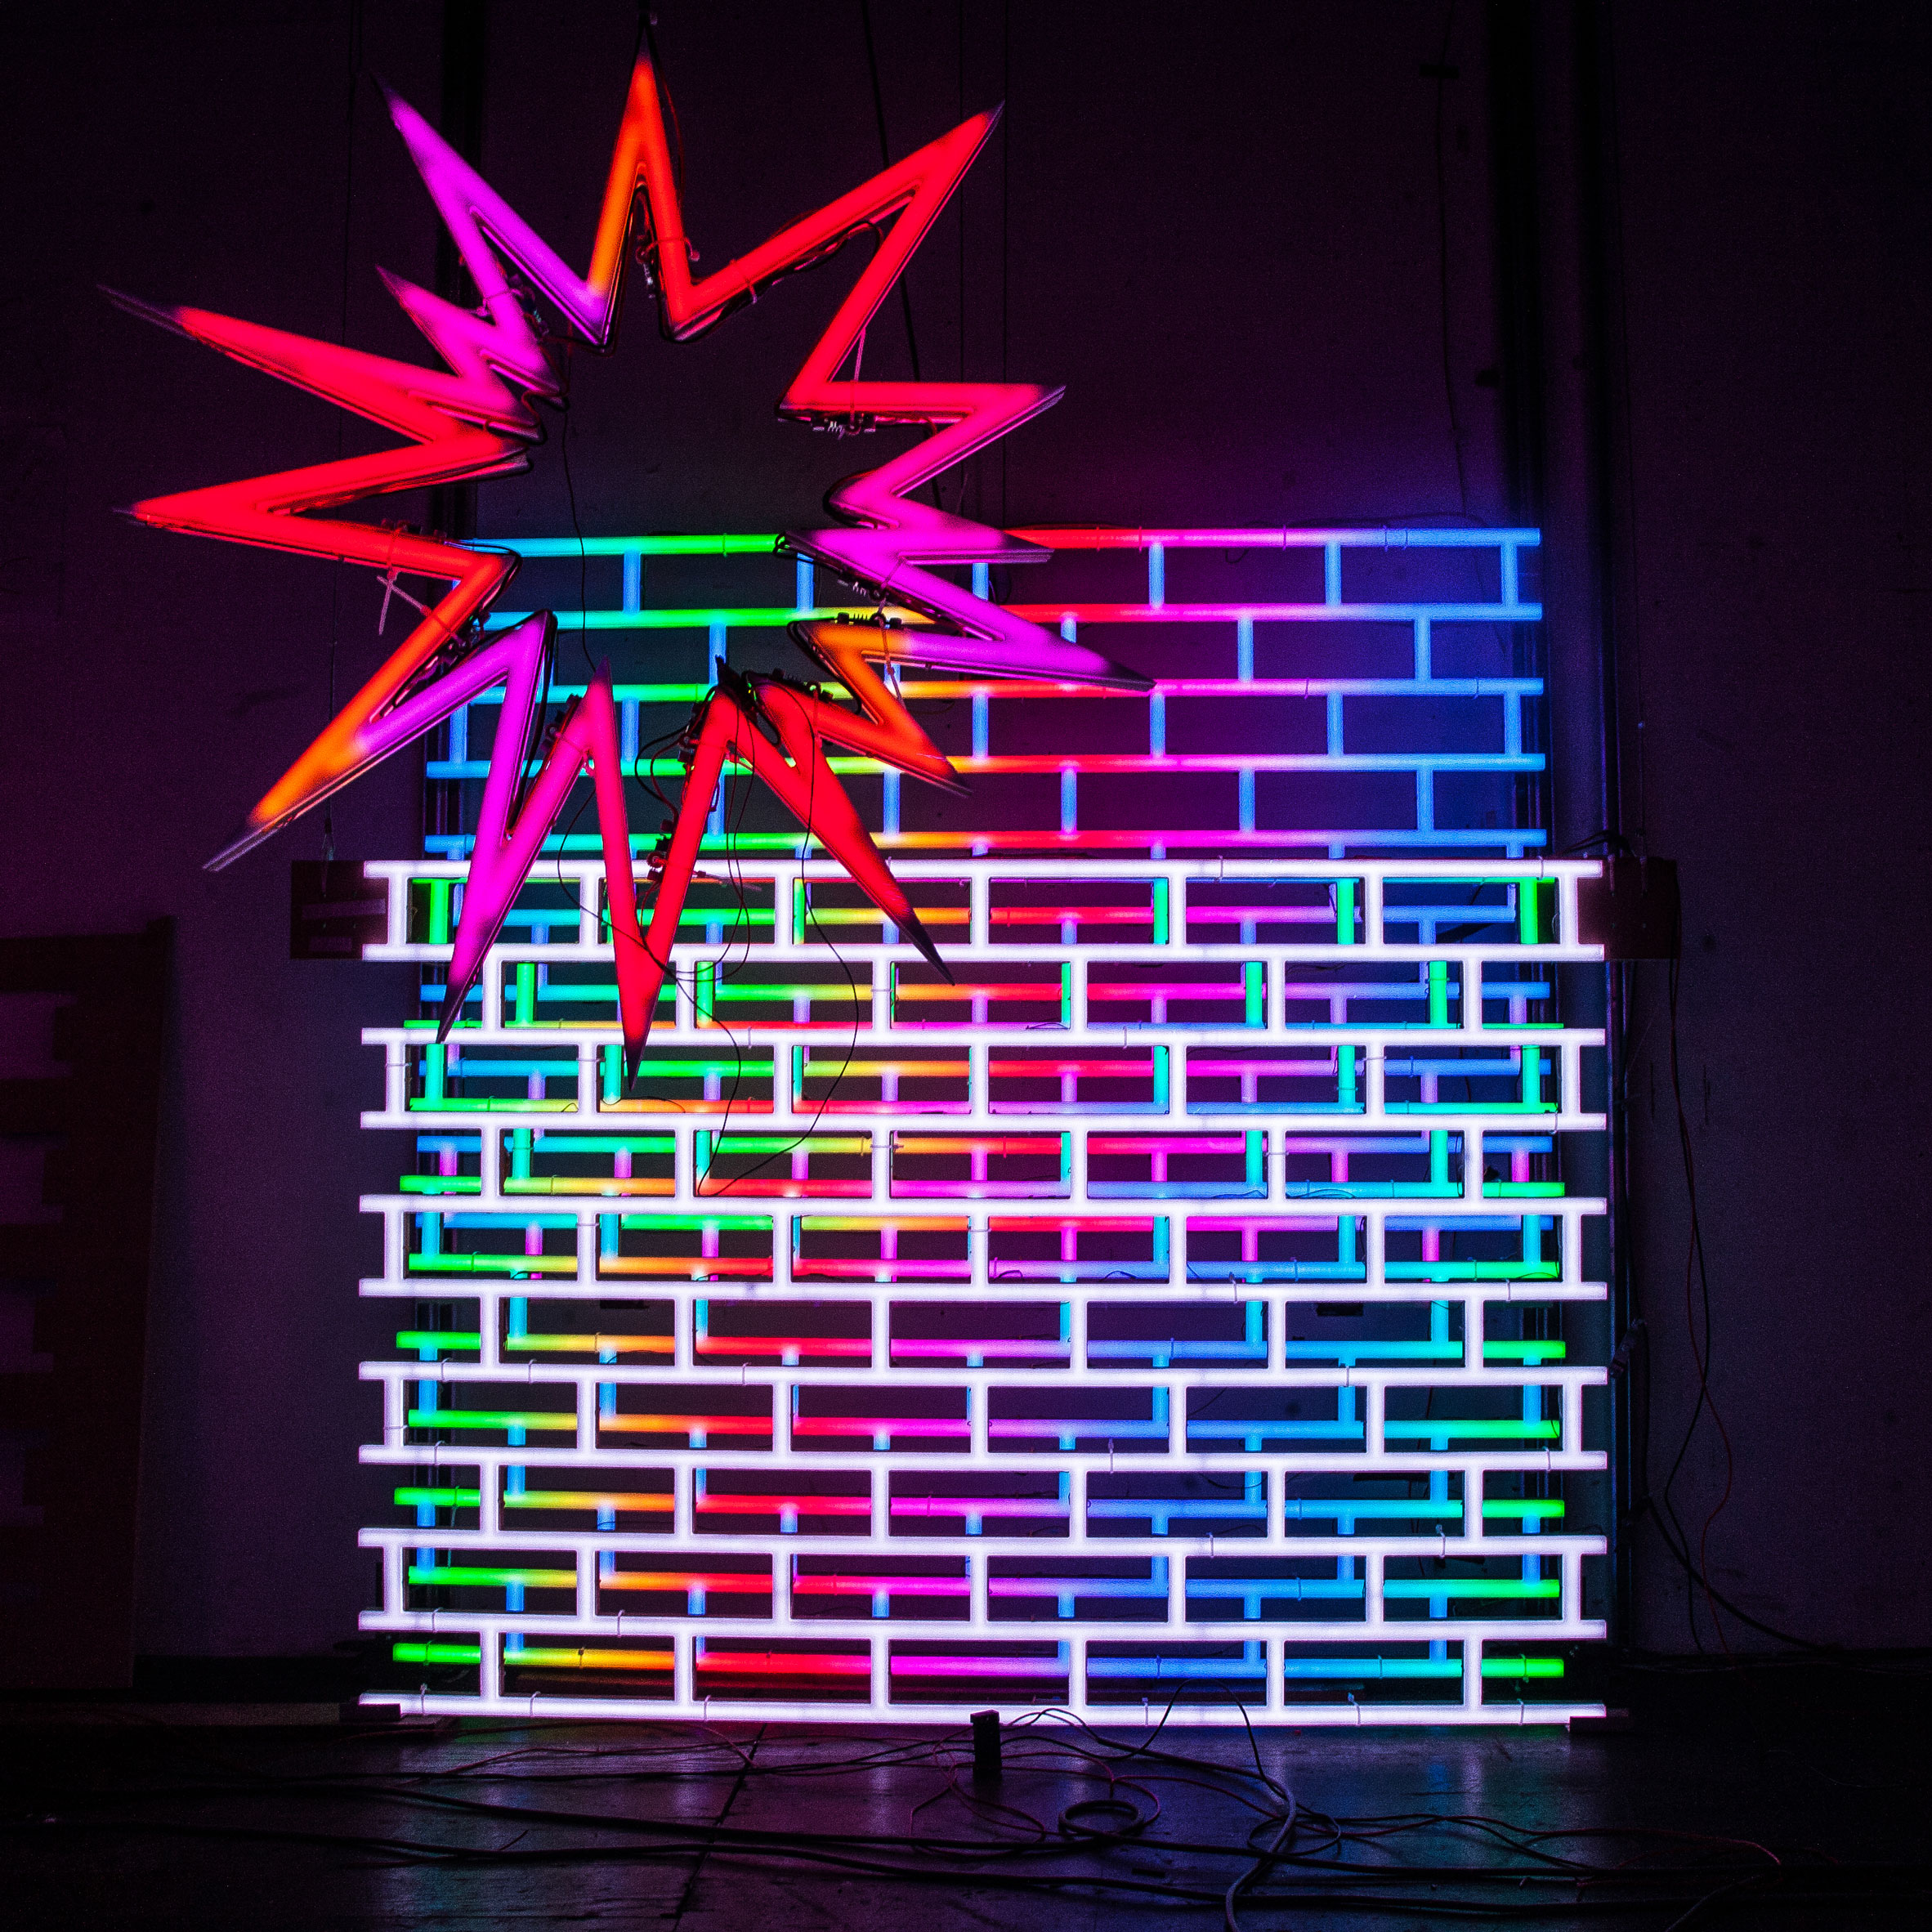 American Echo Chamber neon by José Carlos Martinat